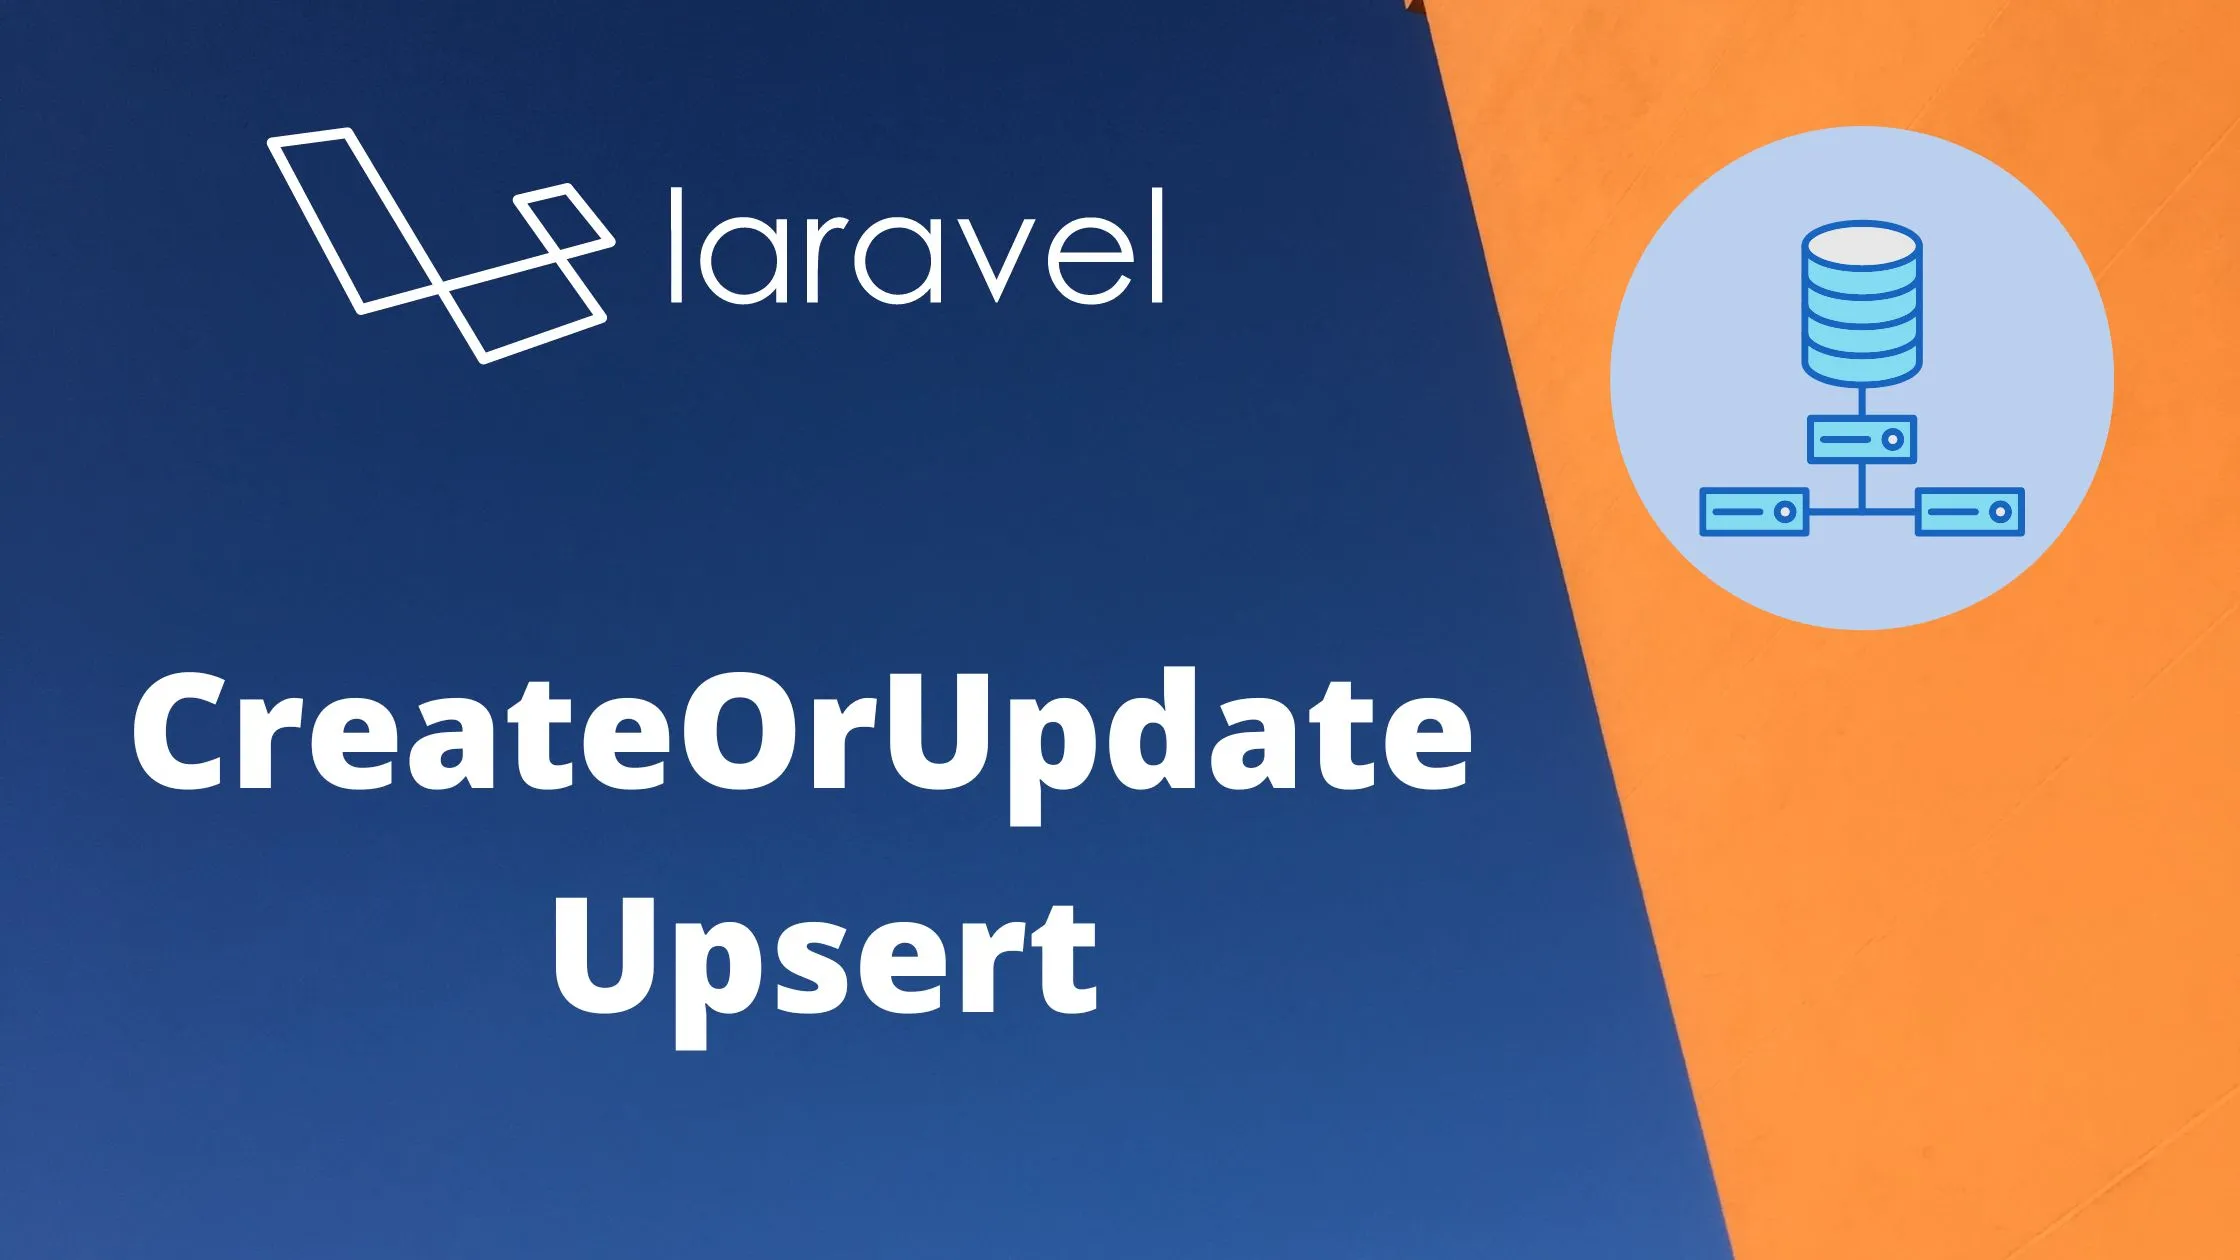 Laravel's CreateOrUpdate Upsert: Um Guia Abrangente com Casos de Uso